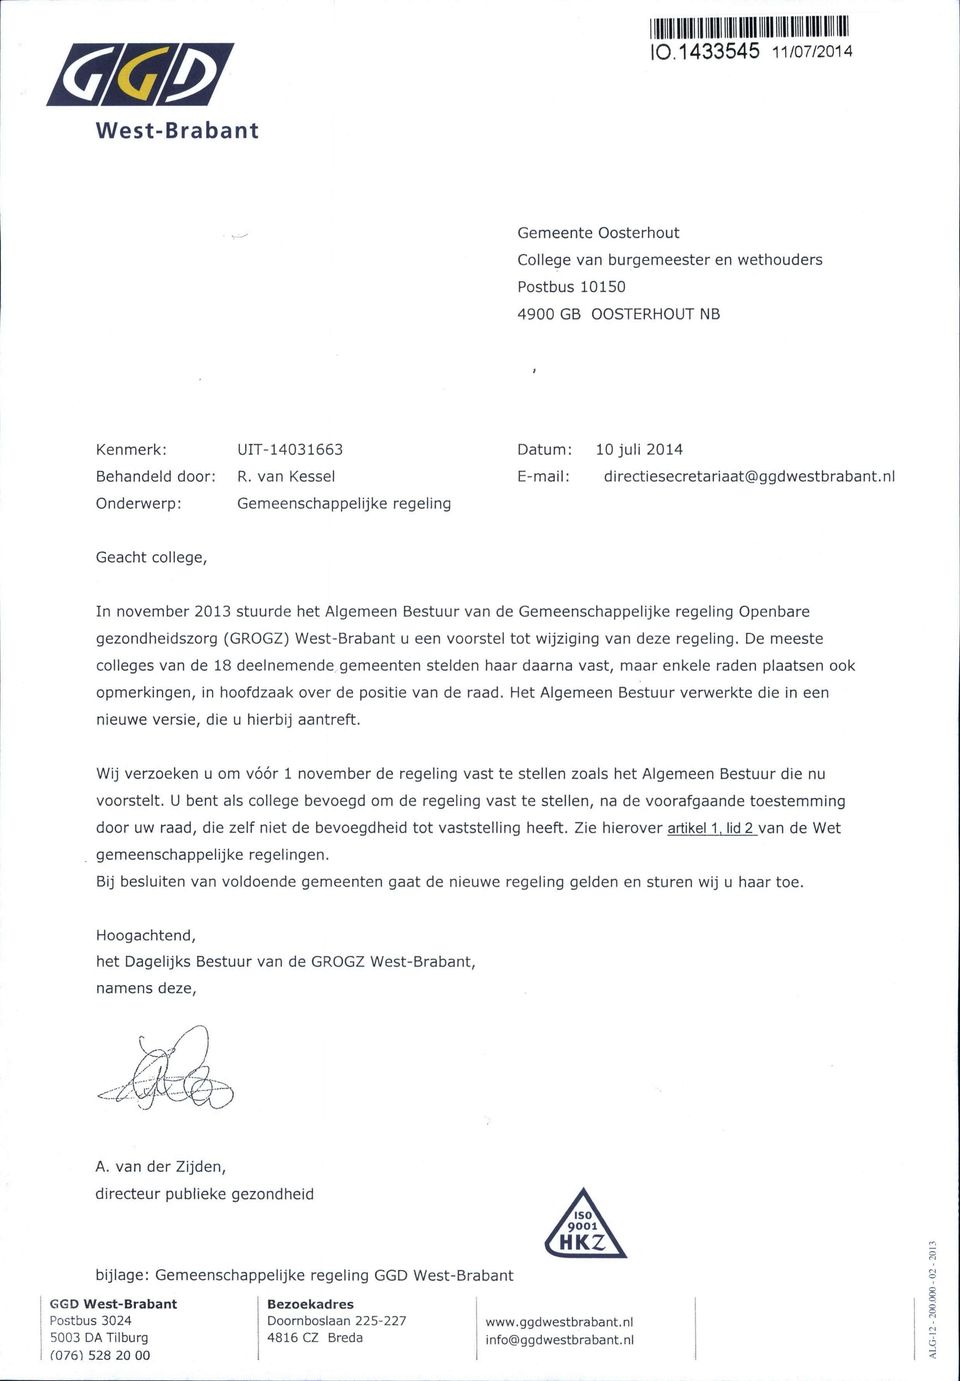 nl Geacht college, In november 2013 stuurde het Algemeen Bestuur van de Gemeenschappelijke regeling Openbare gezondheidszorg (GROGZ) West-Brabant u een voorstel tot wijziging van deze regeling.